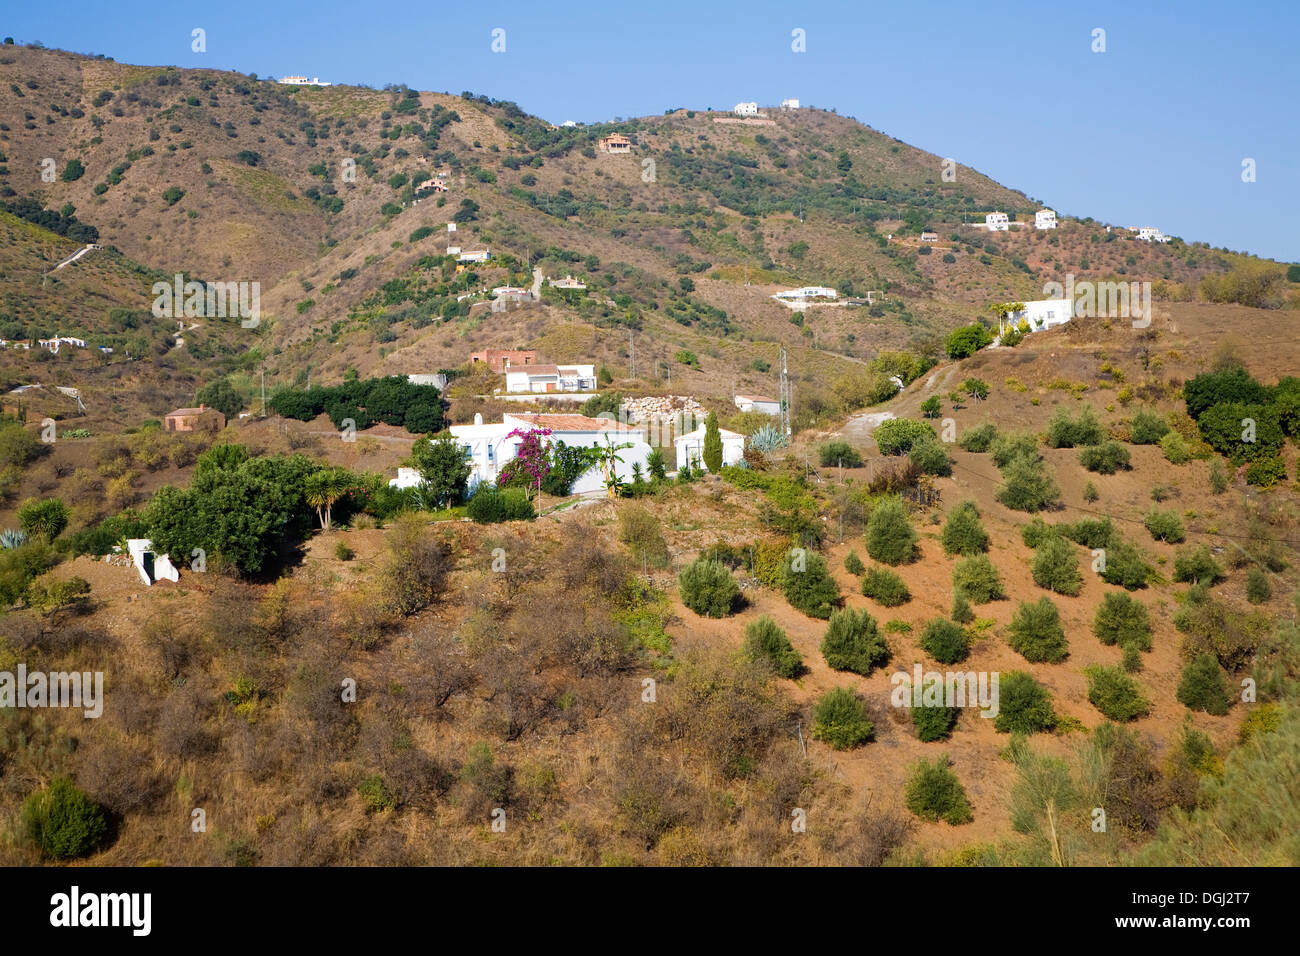 Vue sur campagne environnante de fermes près du village Maure de Comares, la province de Malaga, Espagne Banque D'Images